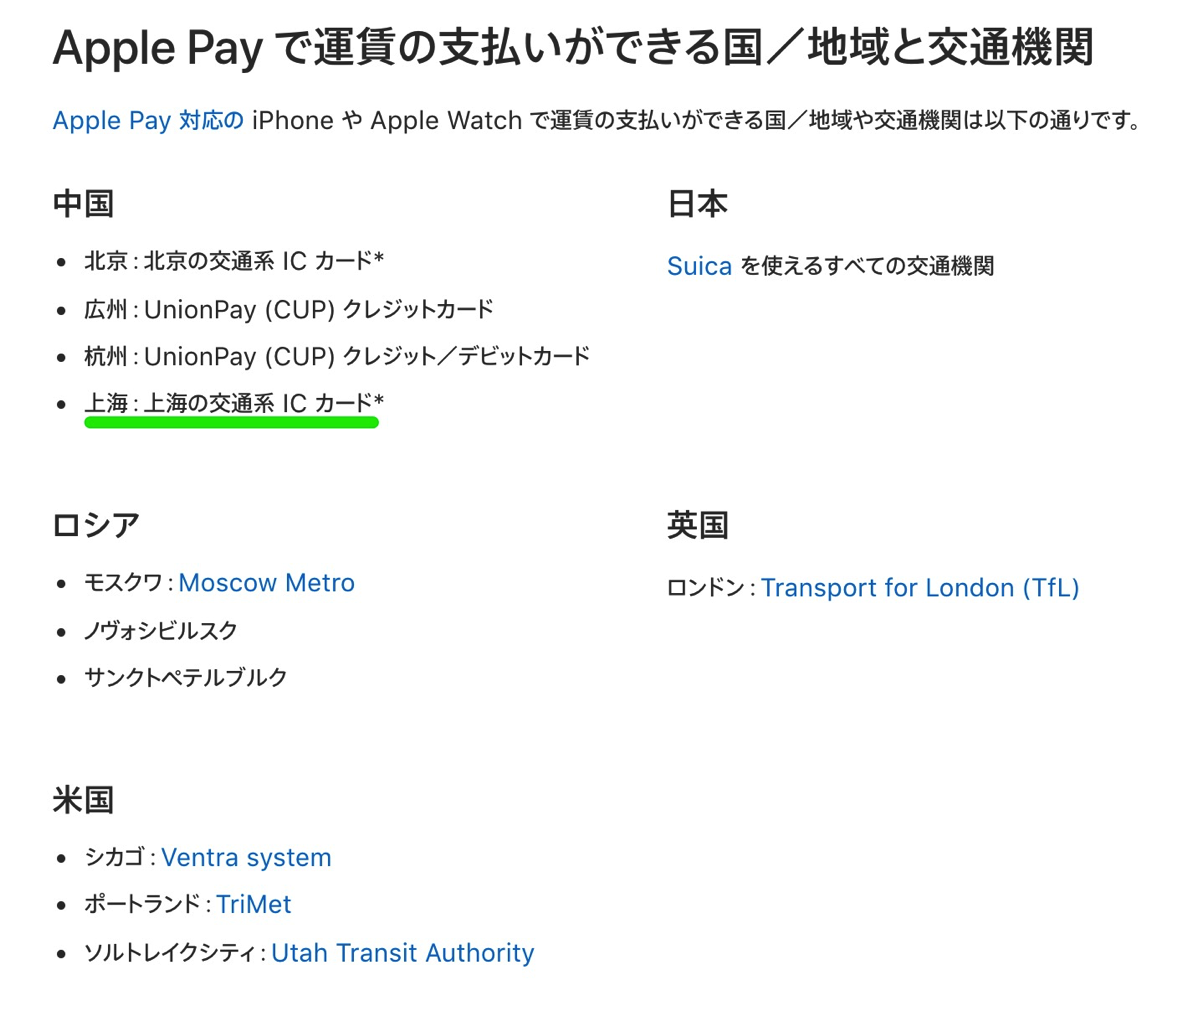 Apple Pay で運賃の支払いができる国／地域と交通機関